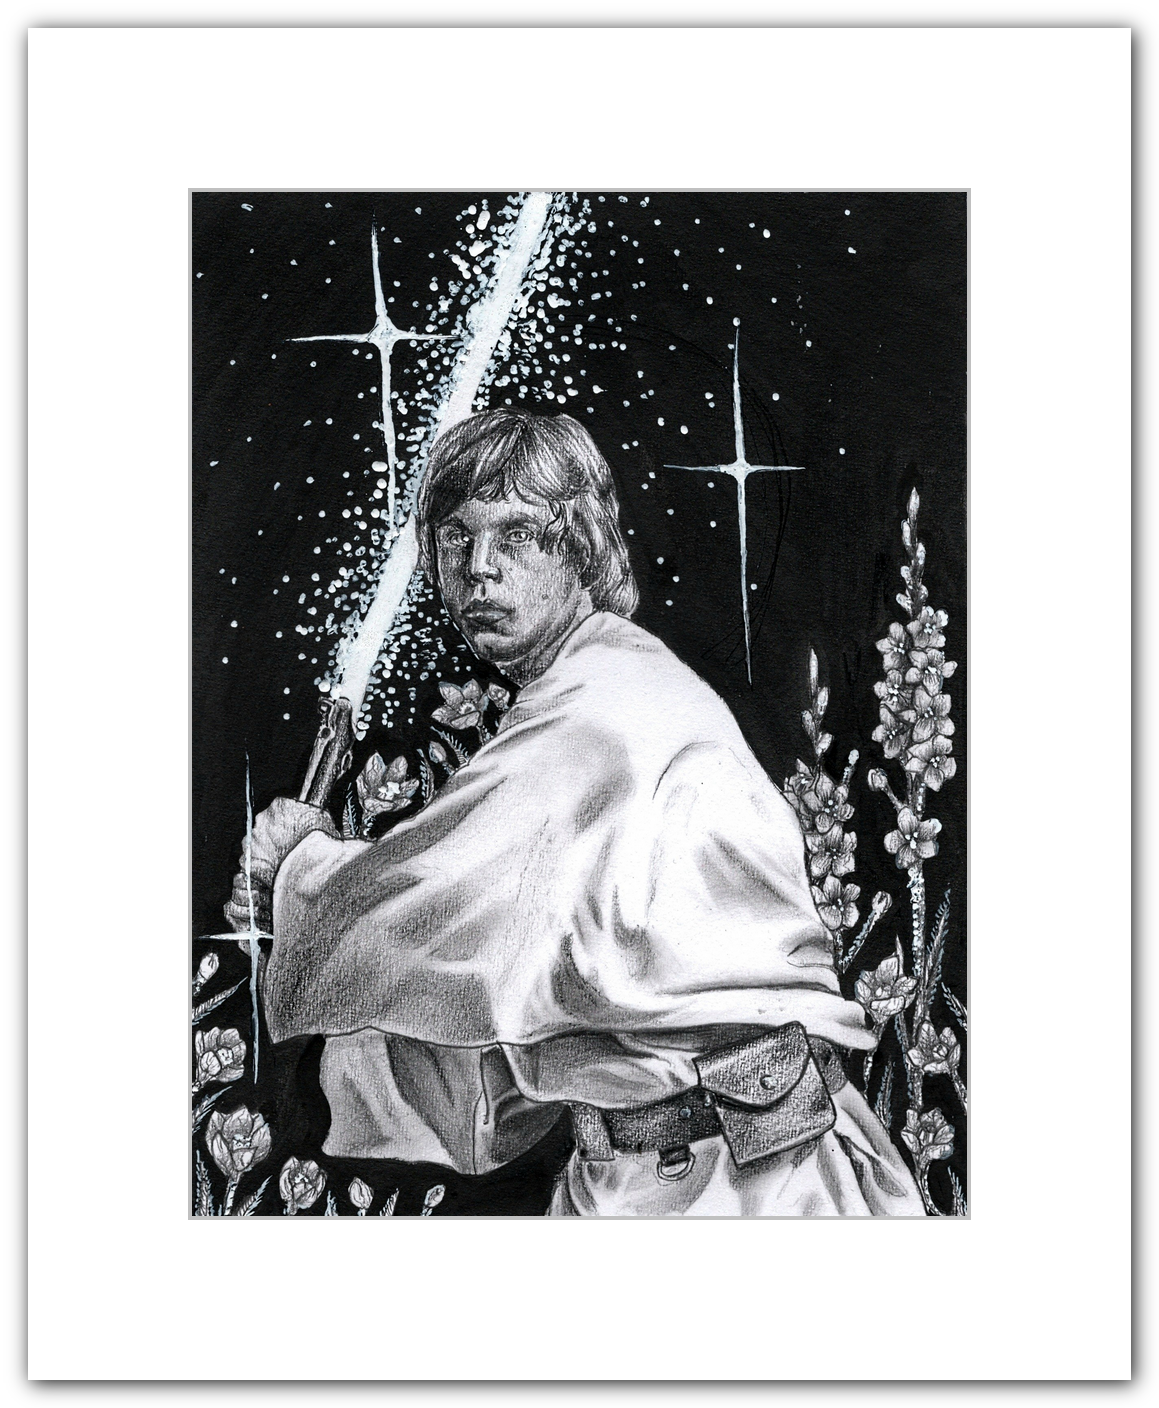 Luke Skywalker by Jalynn 16" x 20" Fine Art Print